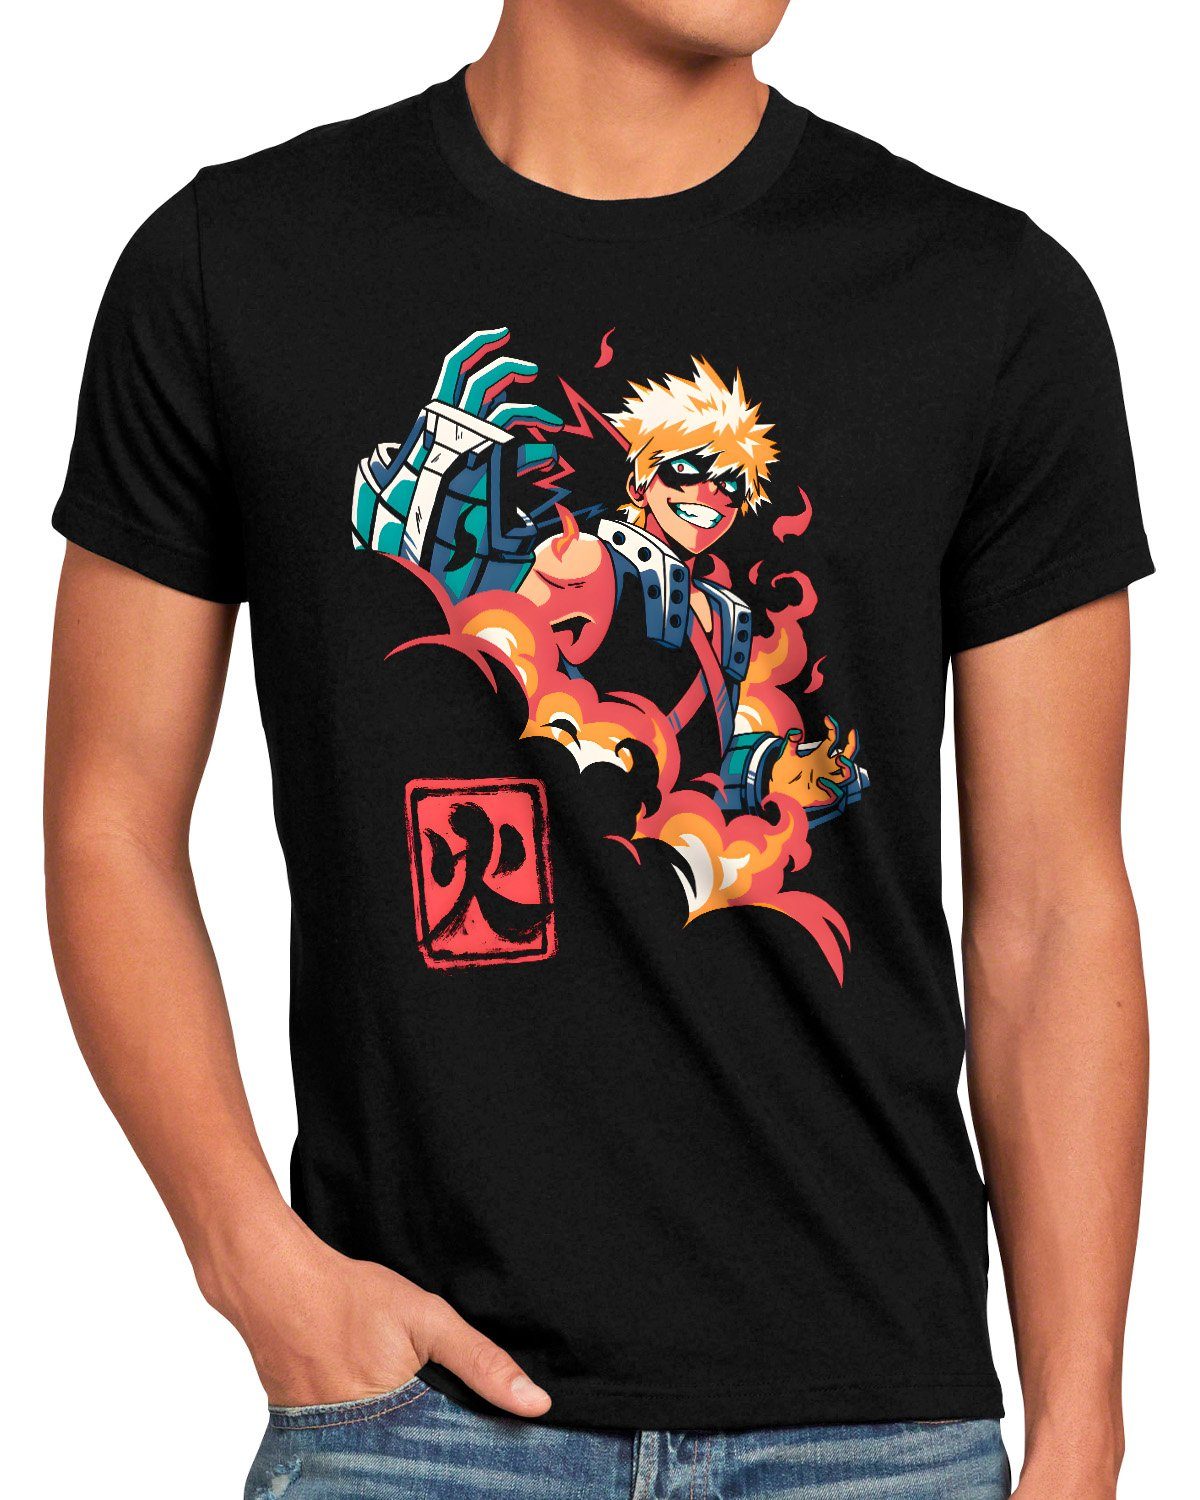 T-Shirt Explosion hero my Boy academia manga style3 cosplay anime Print-Shirt Herren